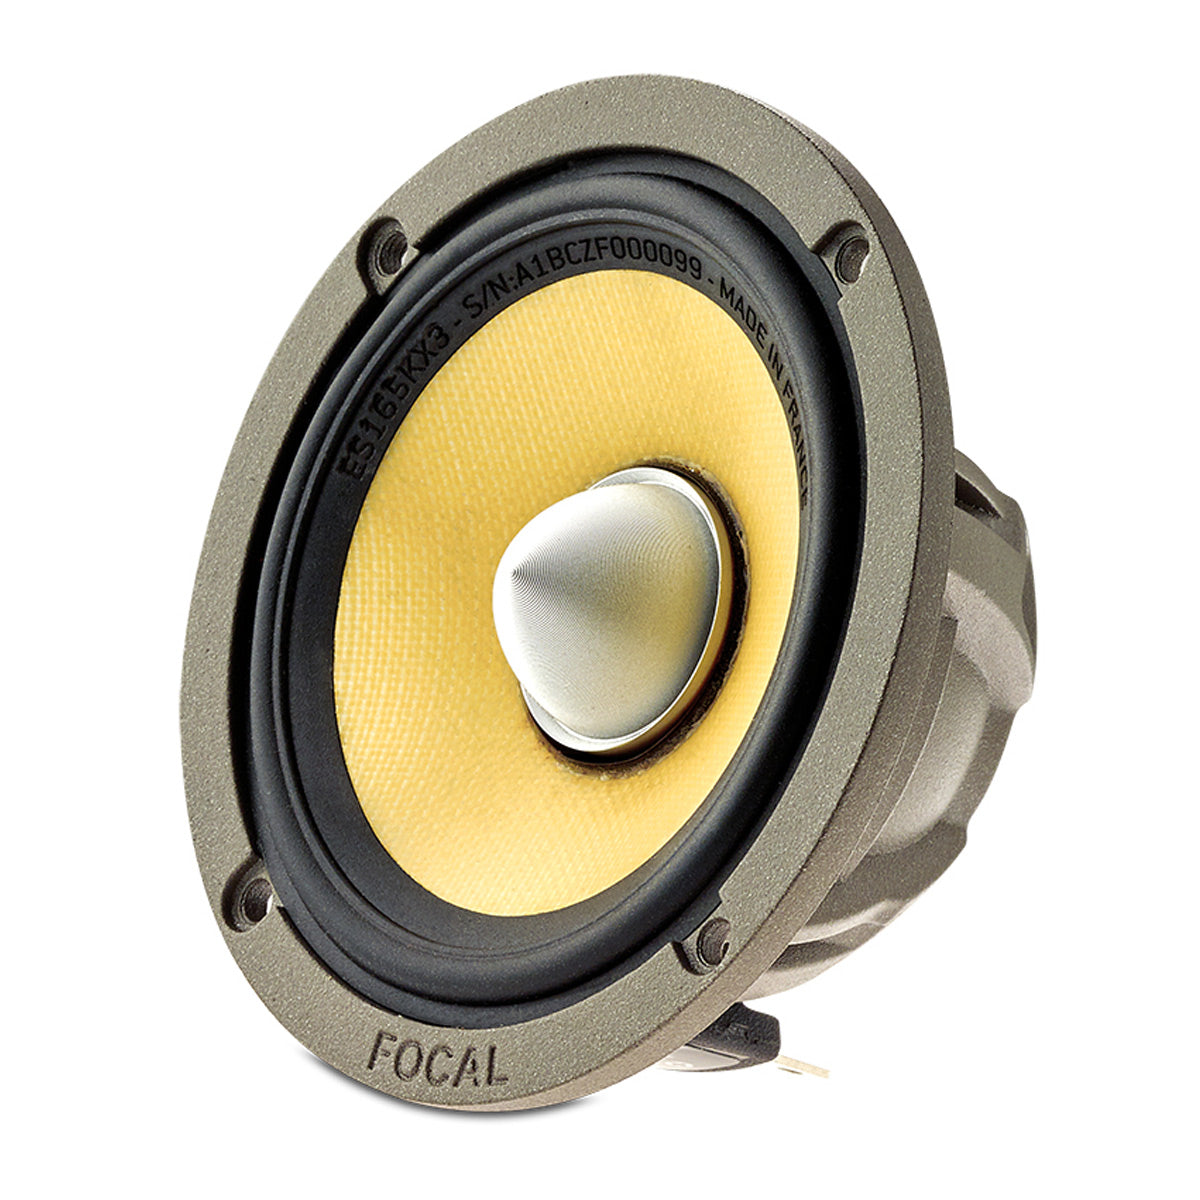 Focal ES 165 KX3 K2 Power 6-1/2" 3-way Component Speakers